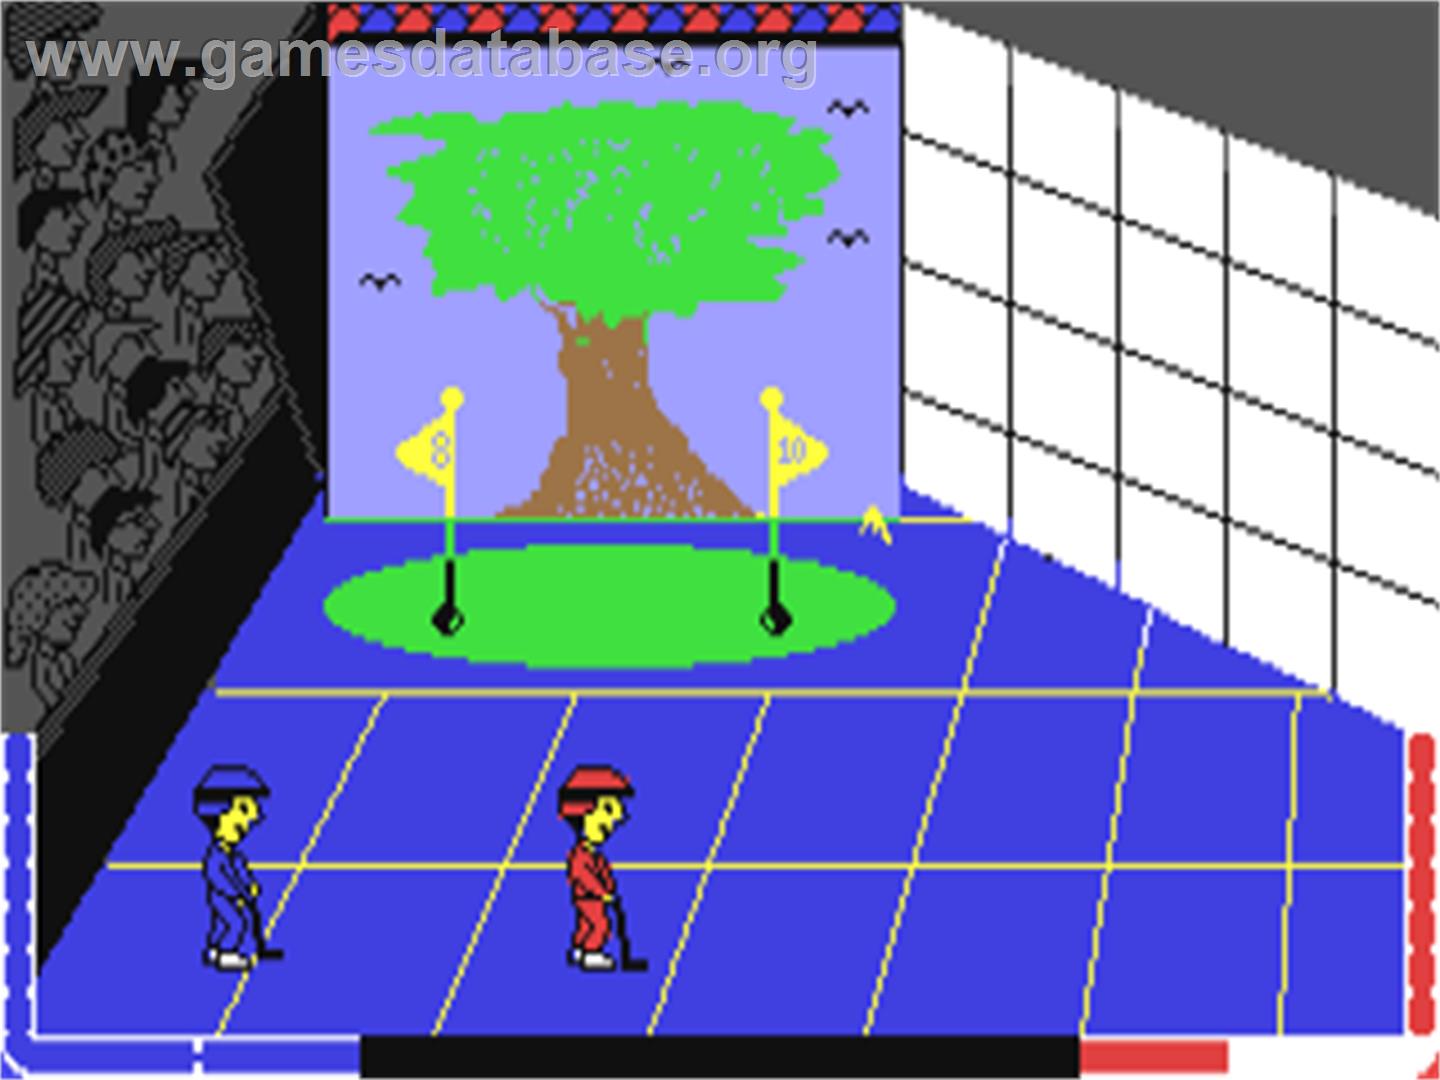 Double Dare - Commodore 64 - Artwork - Title Screen